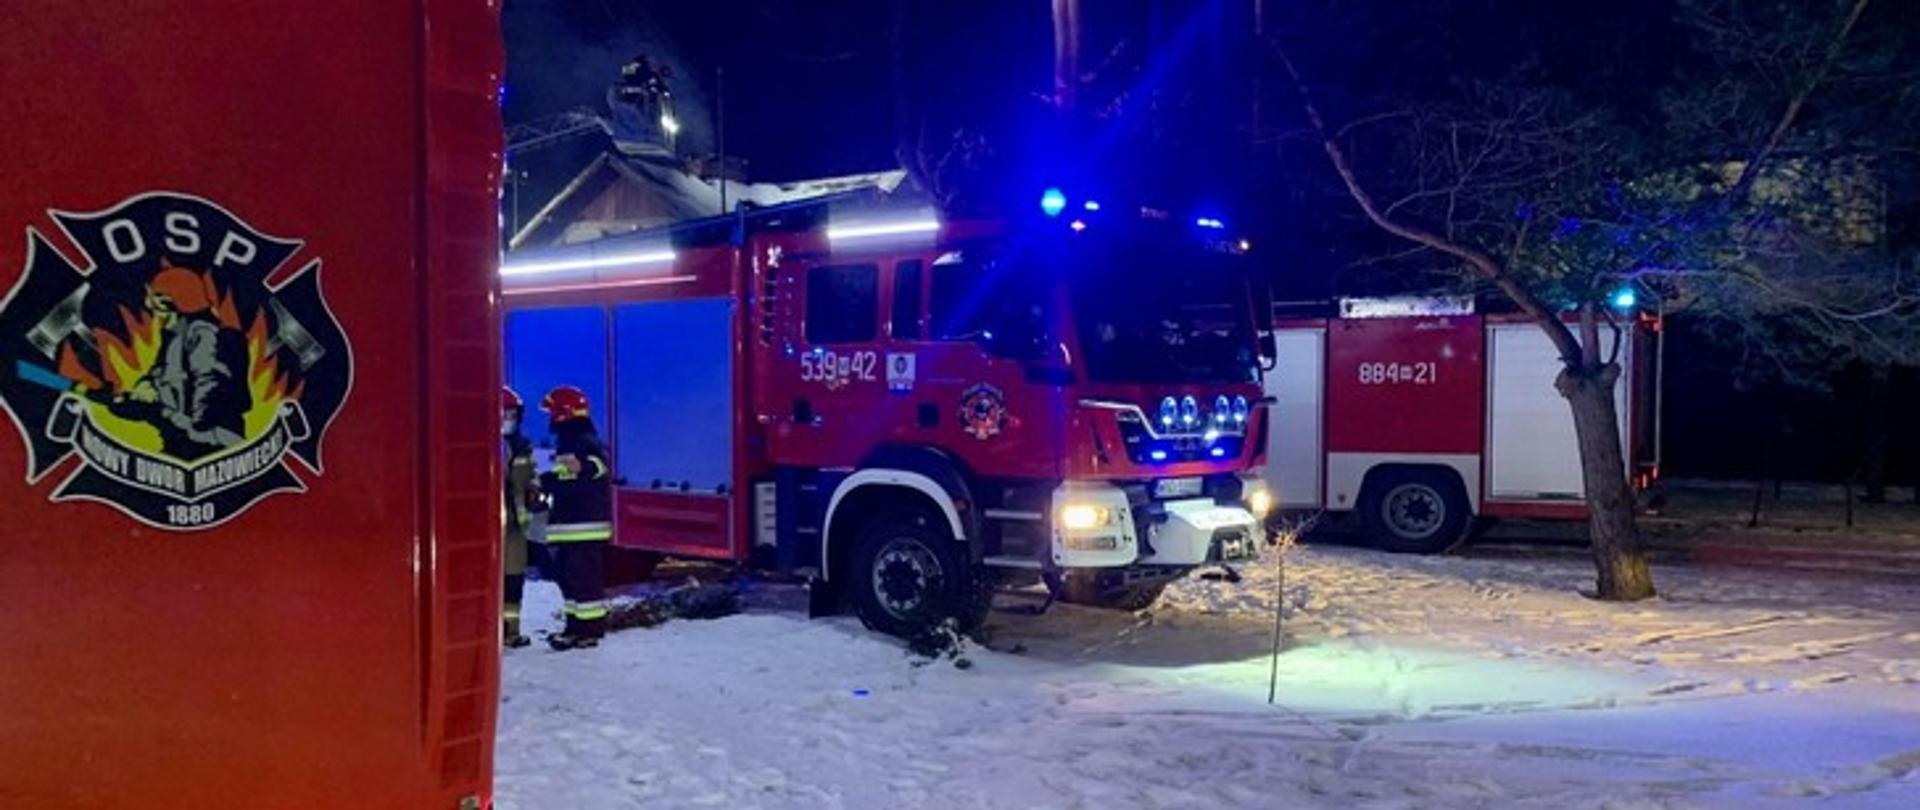 Zdjęcie w warunkach nocnych przedstawia dwa samochody pożarnicze z włączonymi niebieskimi światłami ostrzegawczymi, z lewej strony dwóch strażaków.